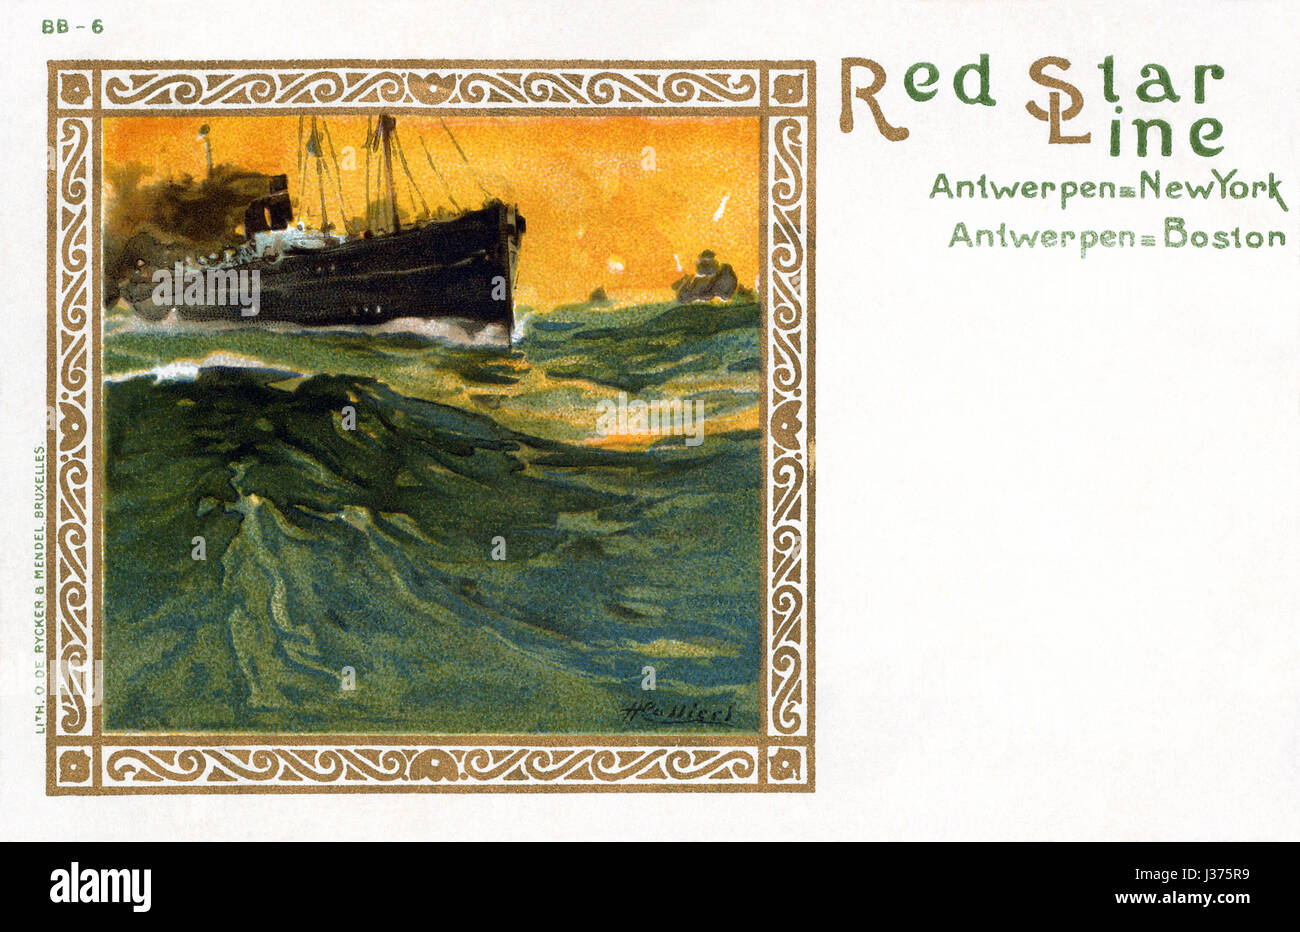 Cartolina Vintage per la Red Star Line spedizione, illustrato da Henri Cassiers. Pubblicato per la prima volta c1901. Foto Stock